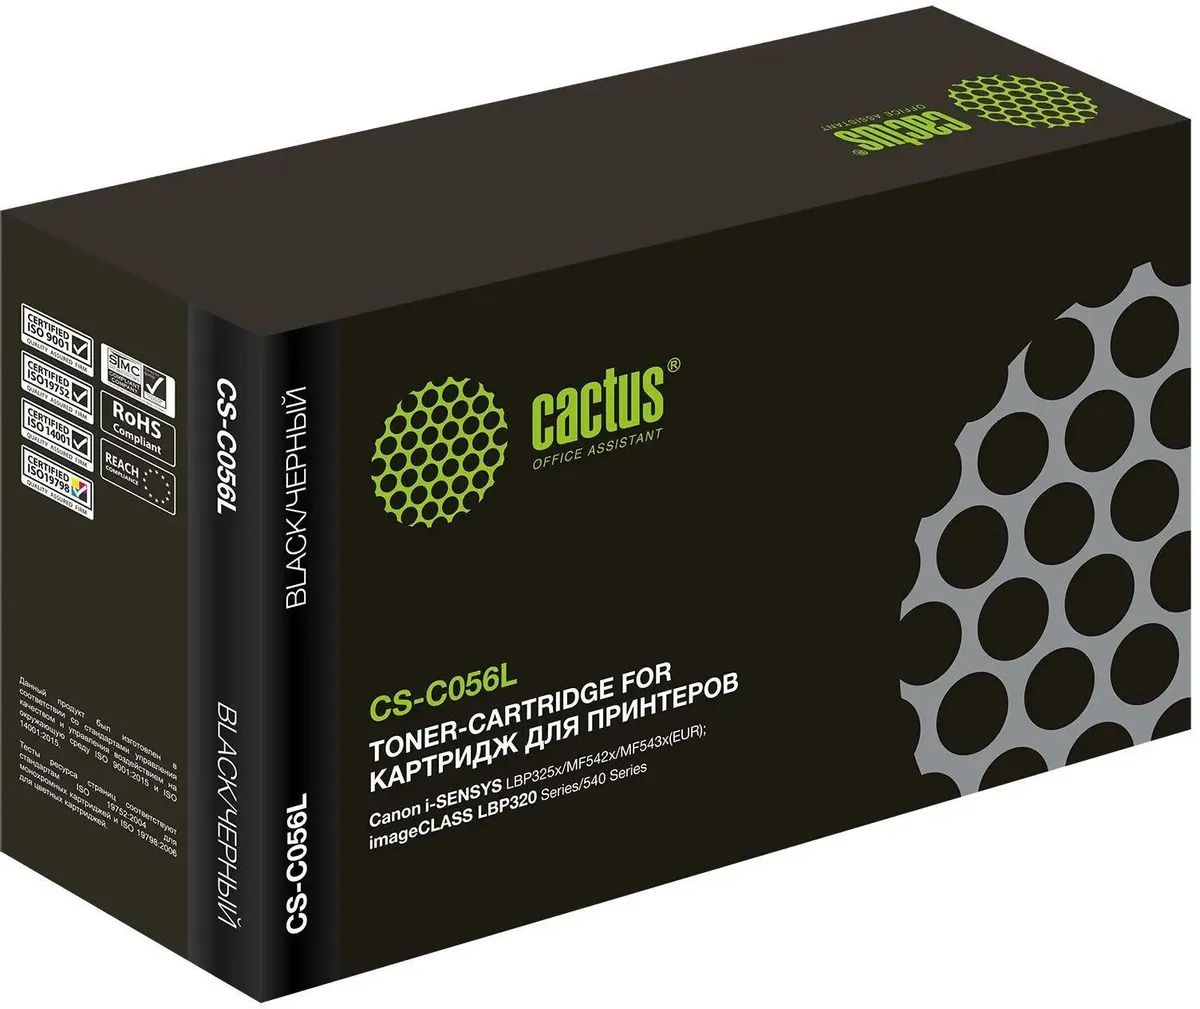 Картридж лазерный Cactus CS-C056L 056 L черный (5100стр.) для Canon imageCLASS LBP320 Series/540 Series